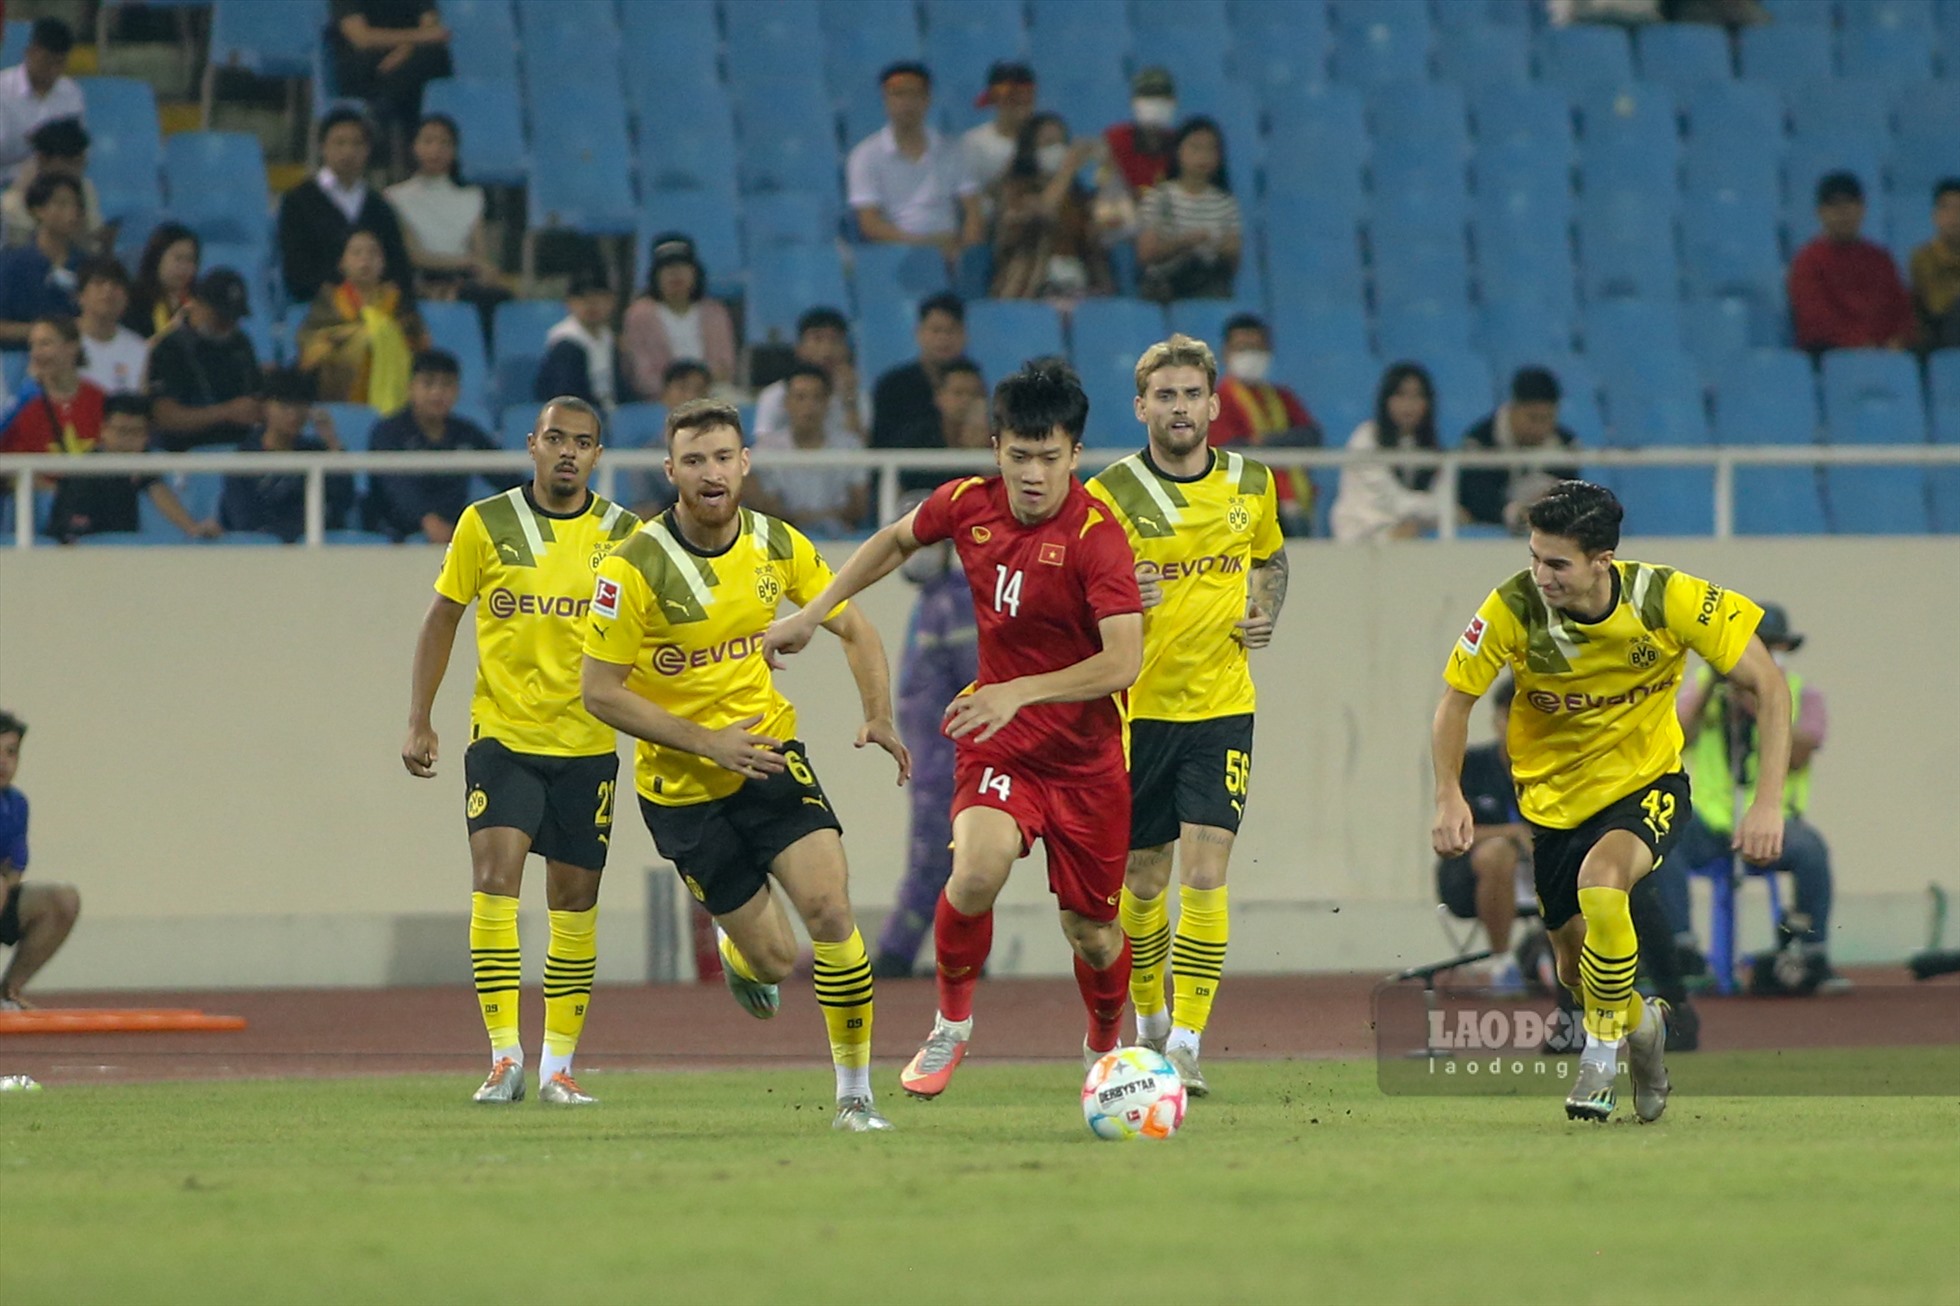 Tối ngày 30.11, tuyển Việt Nam có trận đấu giao hữu với câu lạc bộ  Borussia Dortmund trên sân Mỹ Đình.